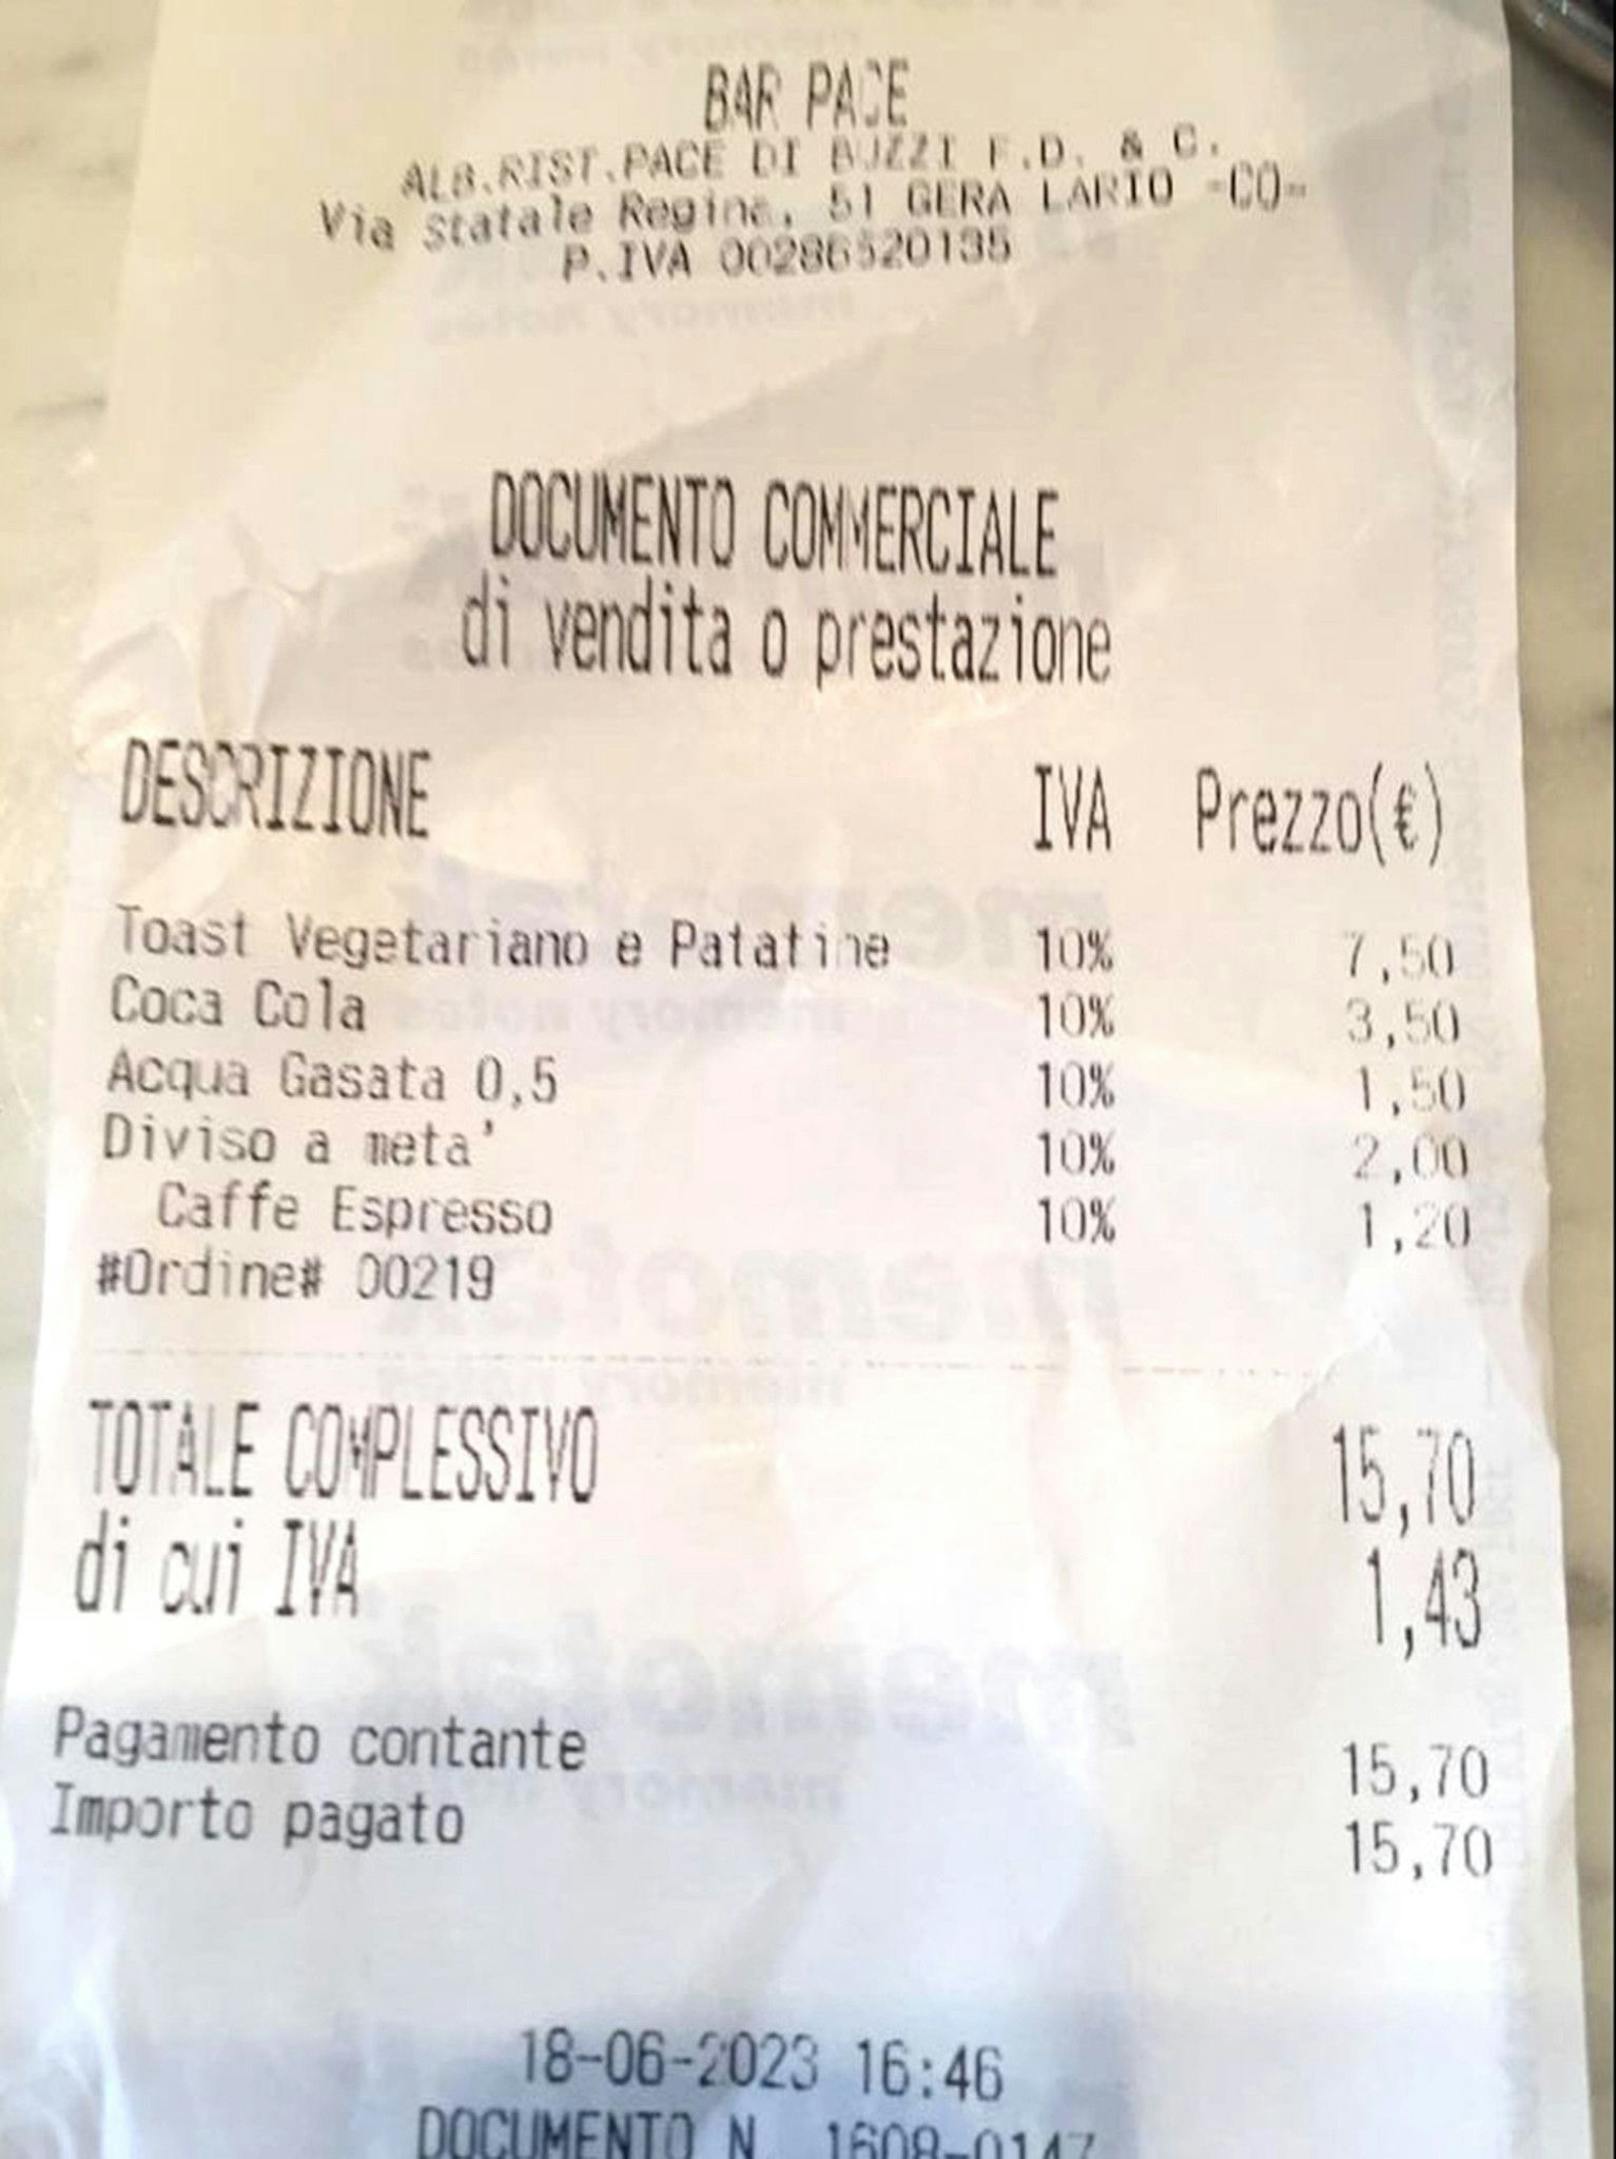 Auf der Rechnung wird das Halbieren des Sandwichs mit zwei Euro verrechnet.